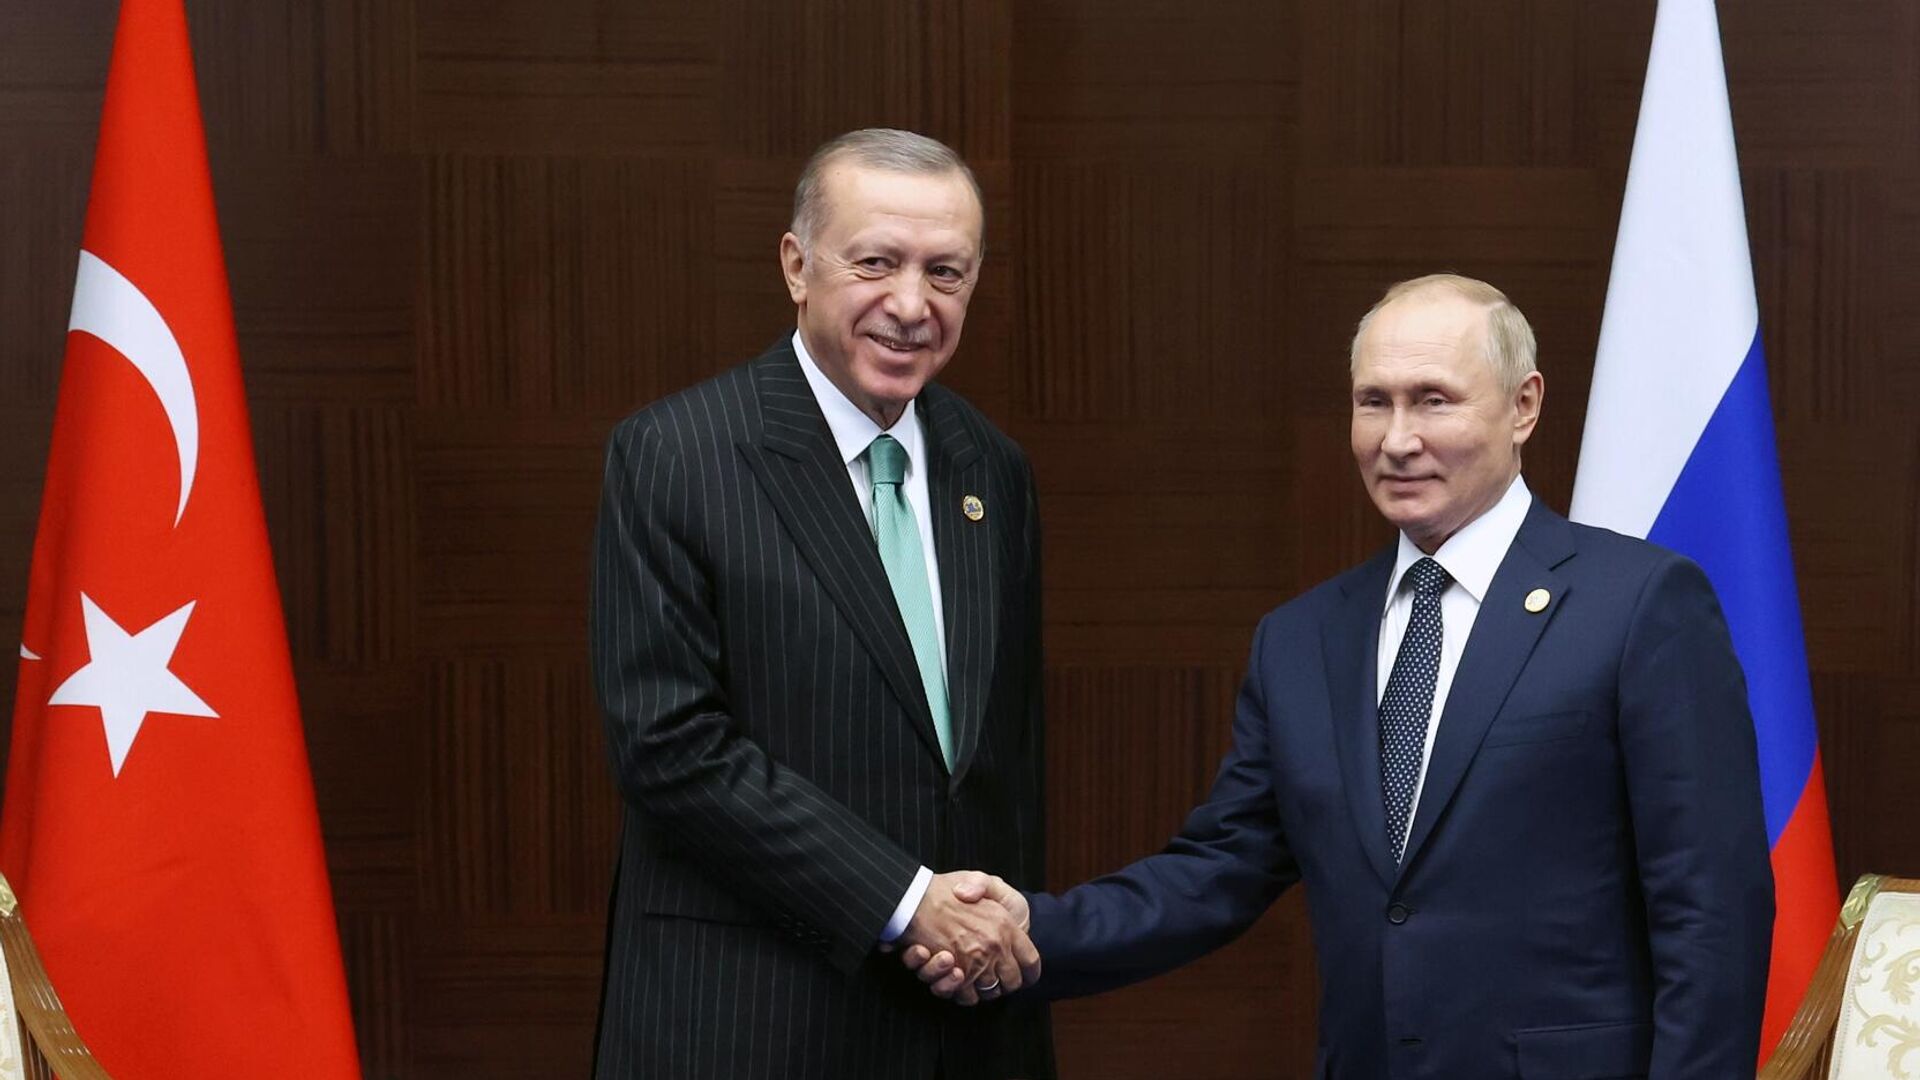 У Турции и России много интересных совместных проектов